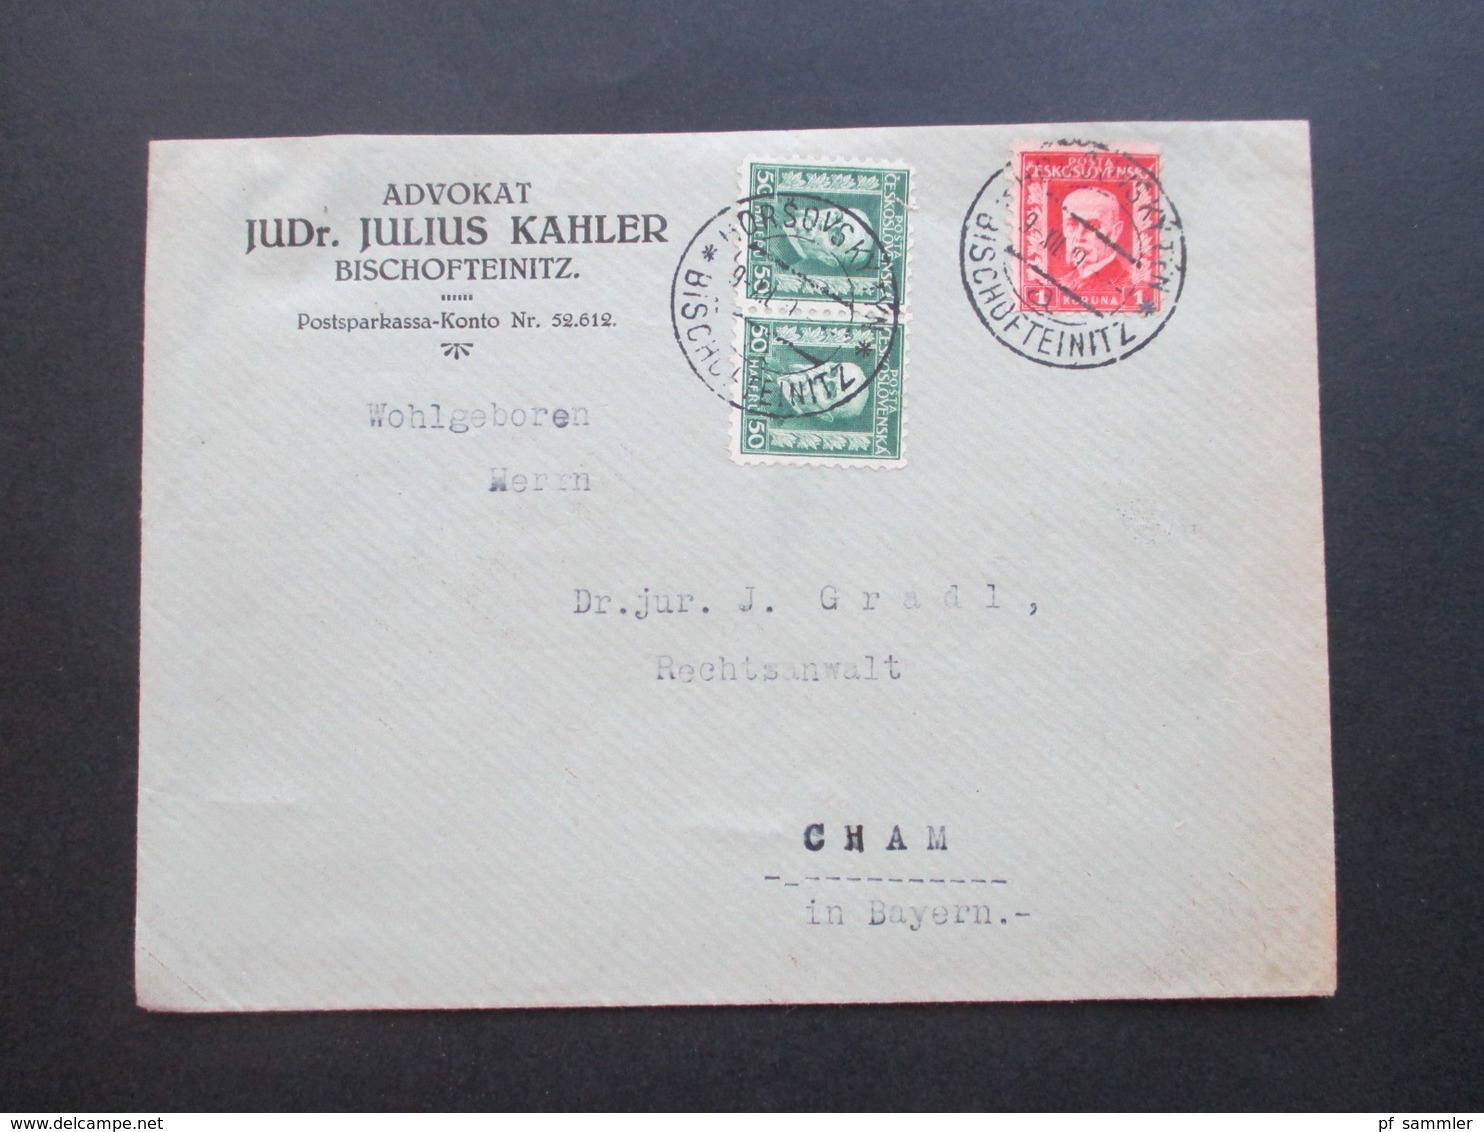 CSSR / Sudetenland 1929 Beleg Aus Bischofteinitz Advokat JUDr. Julius Kahler Zweisprachiger Stempel - Covers & Documents